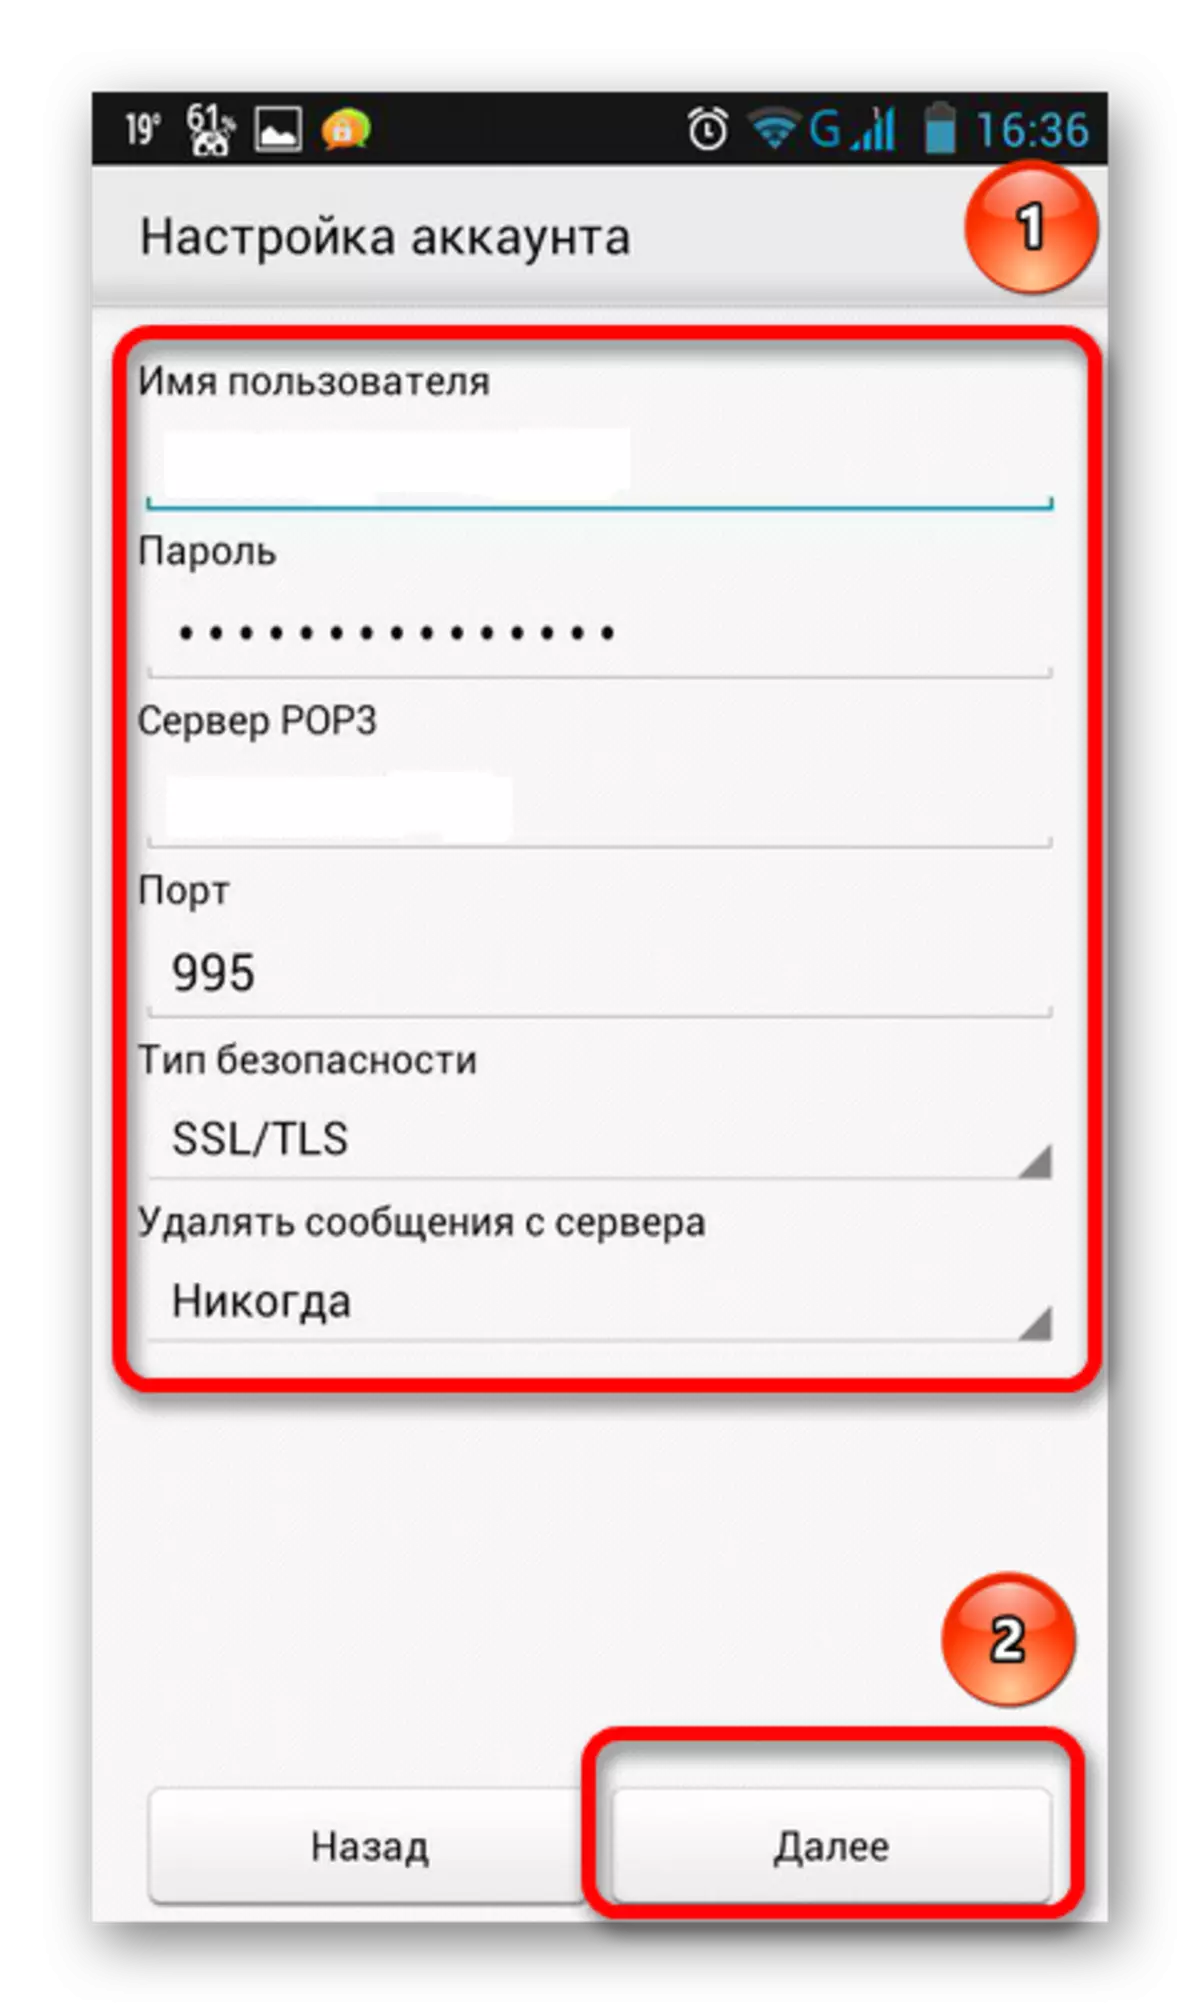 Entrez le mot de passe et le nom de Yandex Mail